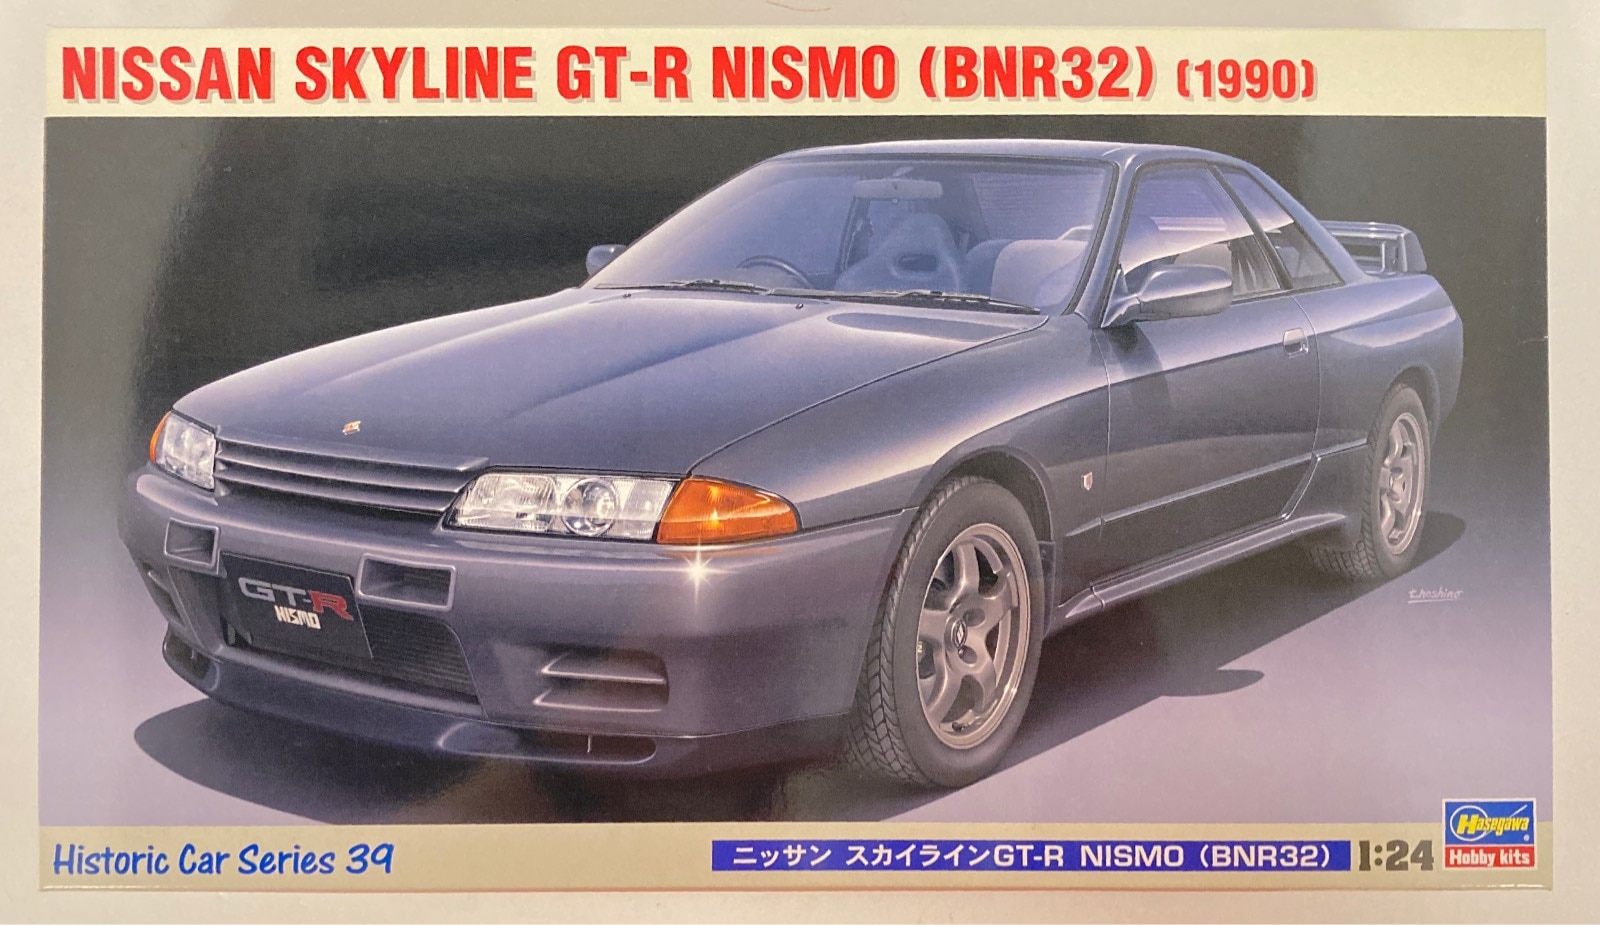 代引可】 ハセガワ HC39 ニッサン スカイライン GT-R NISMO BNR32